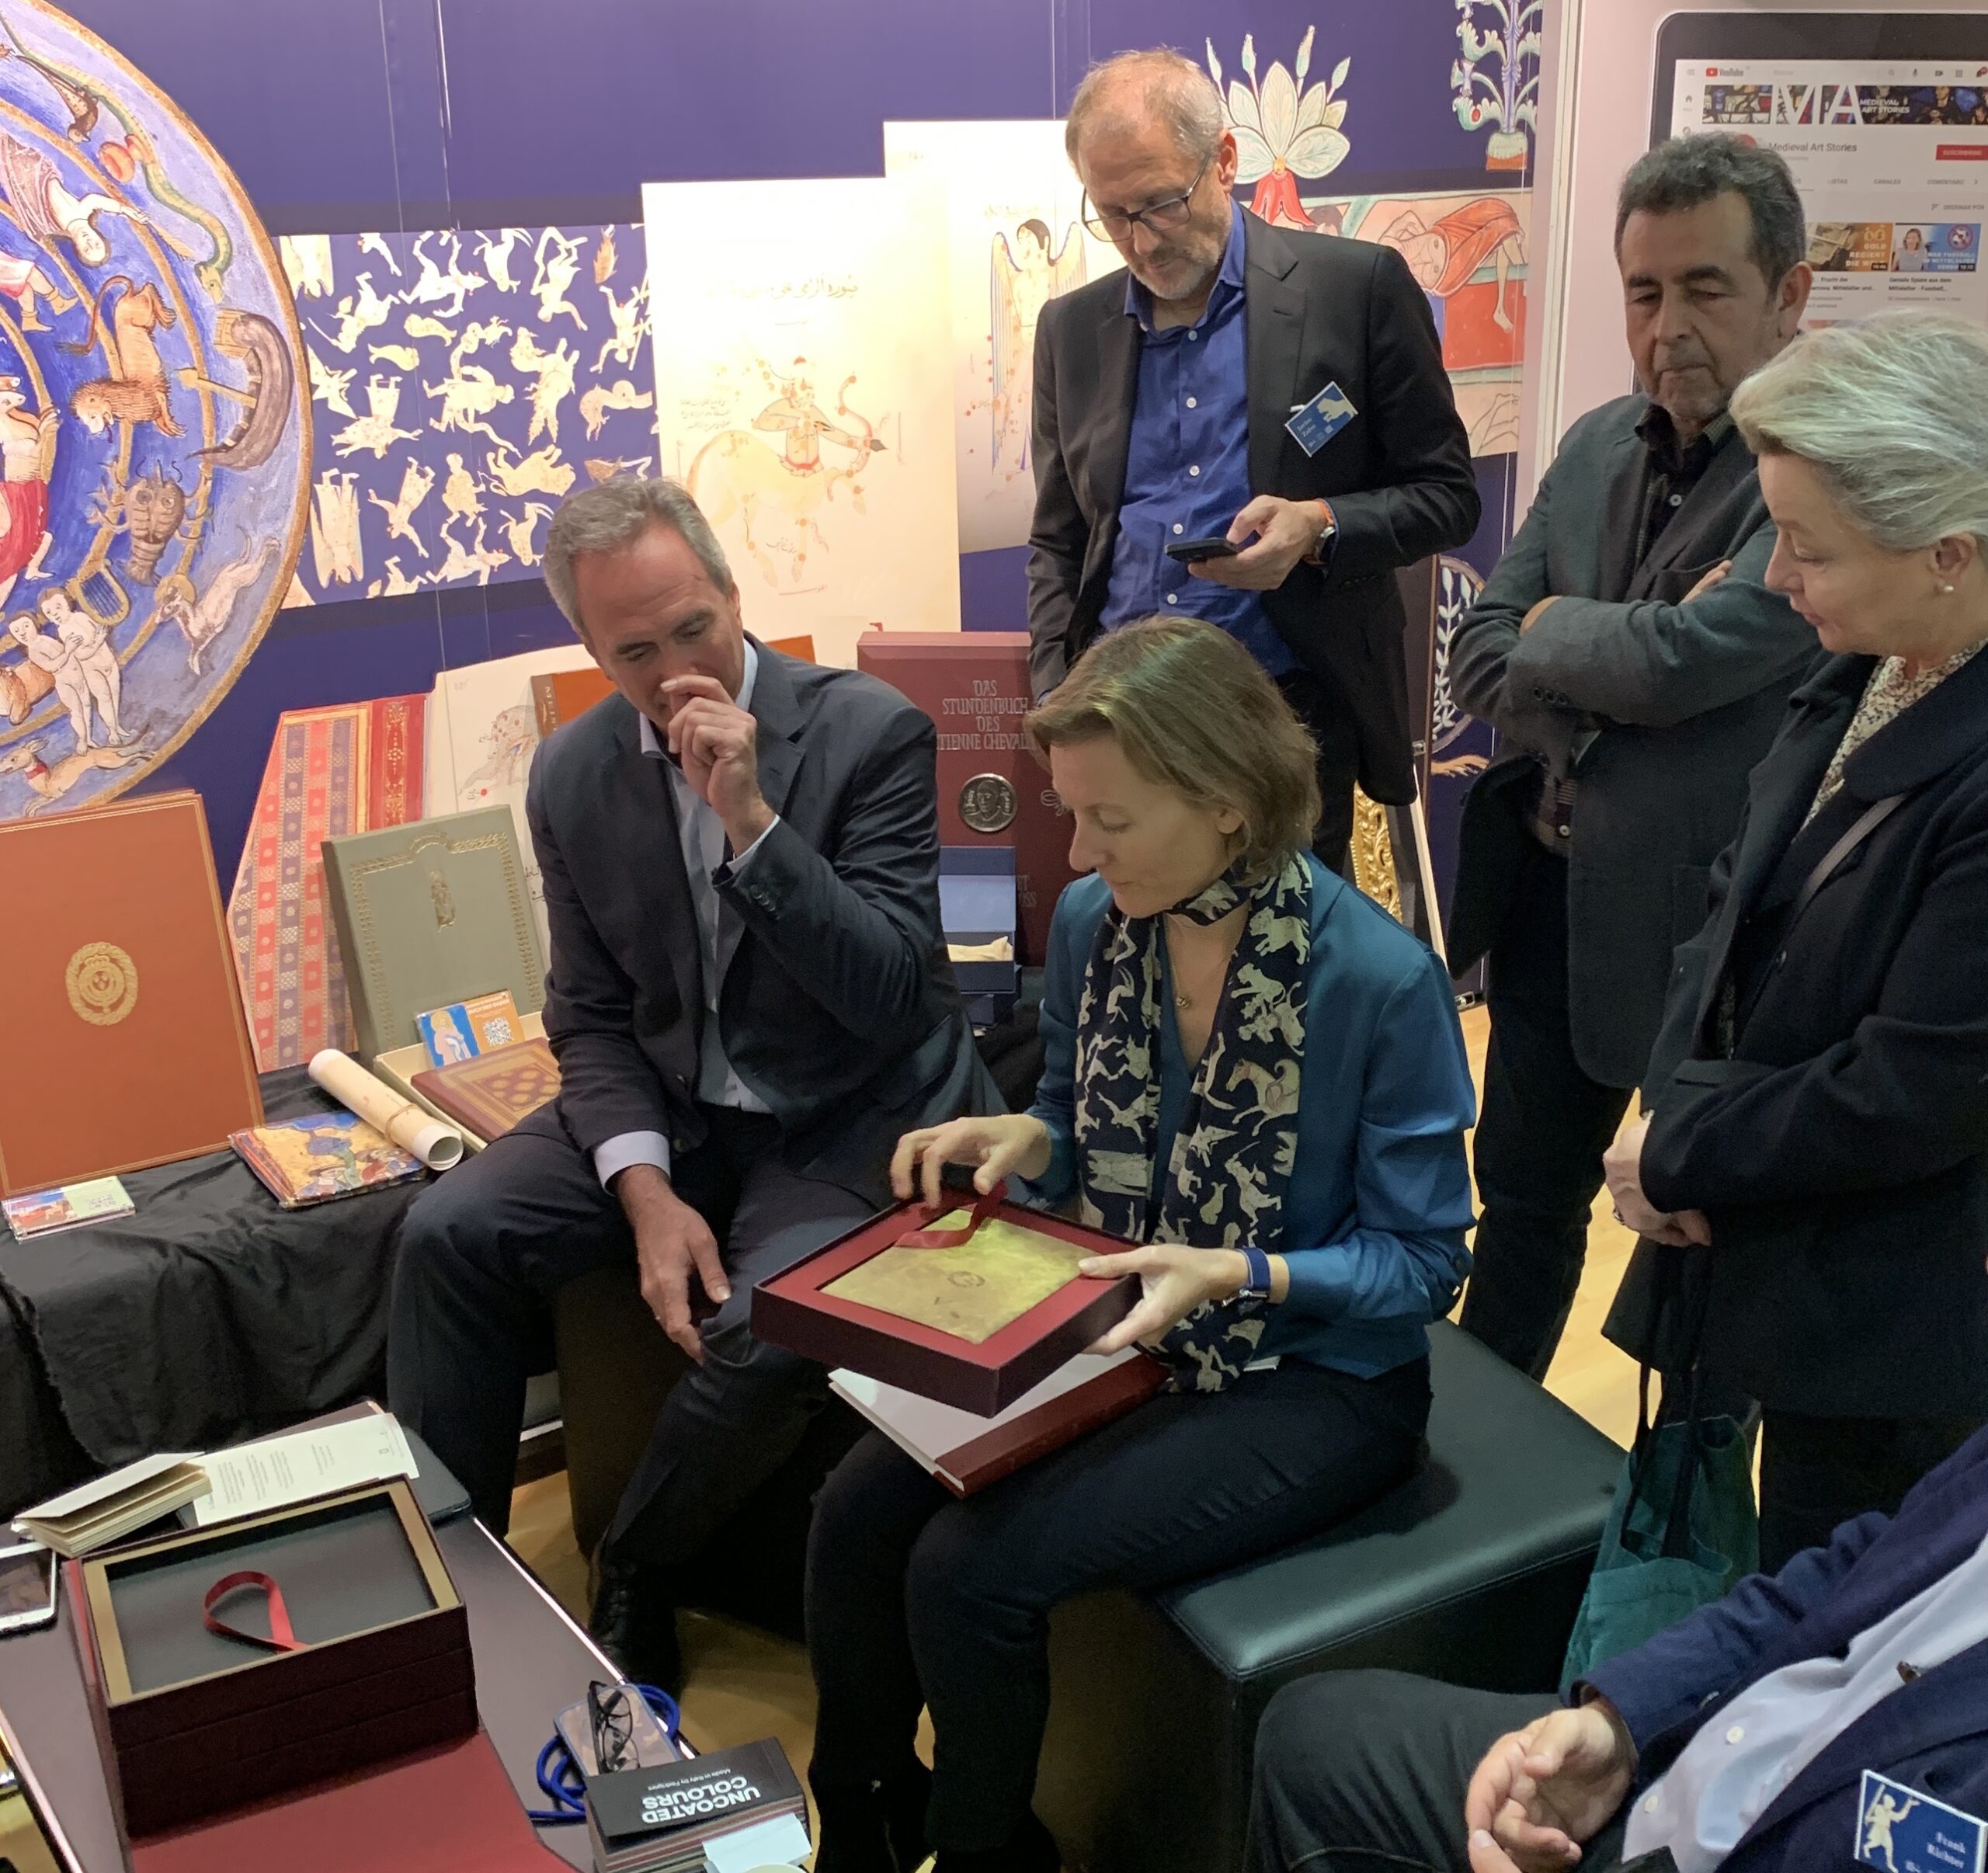 Am Messestand während der Frankfurter Buchmesse 2022, Charlotte Kramer - die Verlagsleiterin - begutachtet gerade die Kassette, die für die Pariser Manuskripte von Leonardo da Vinci vorgesehen ist.